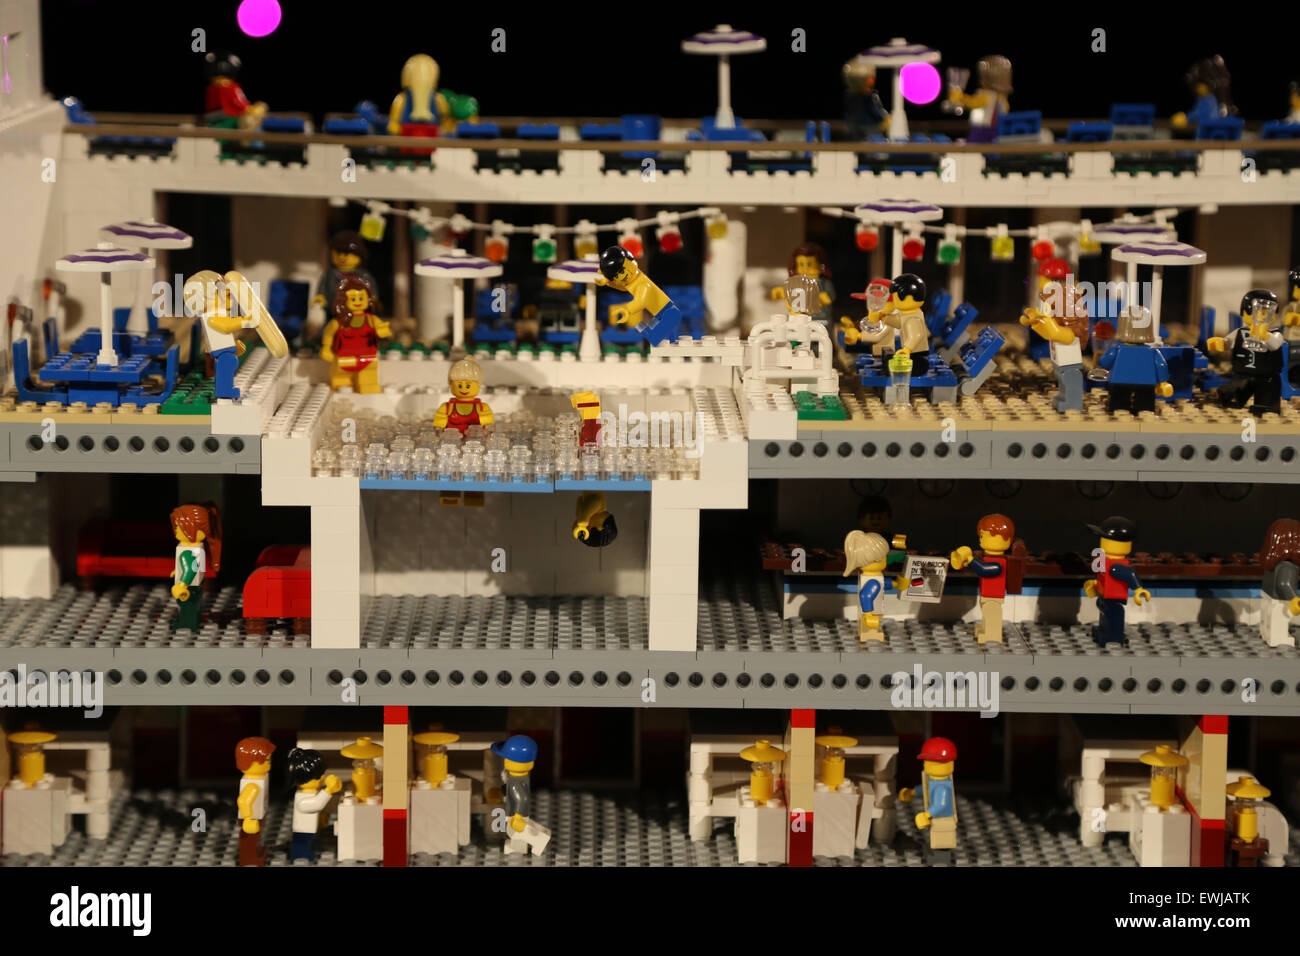 Lego ship -Fotos und -Bildmaterial in hoher Auflösung - Seite 3 - Alamy